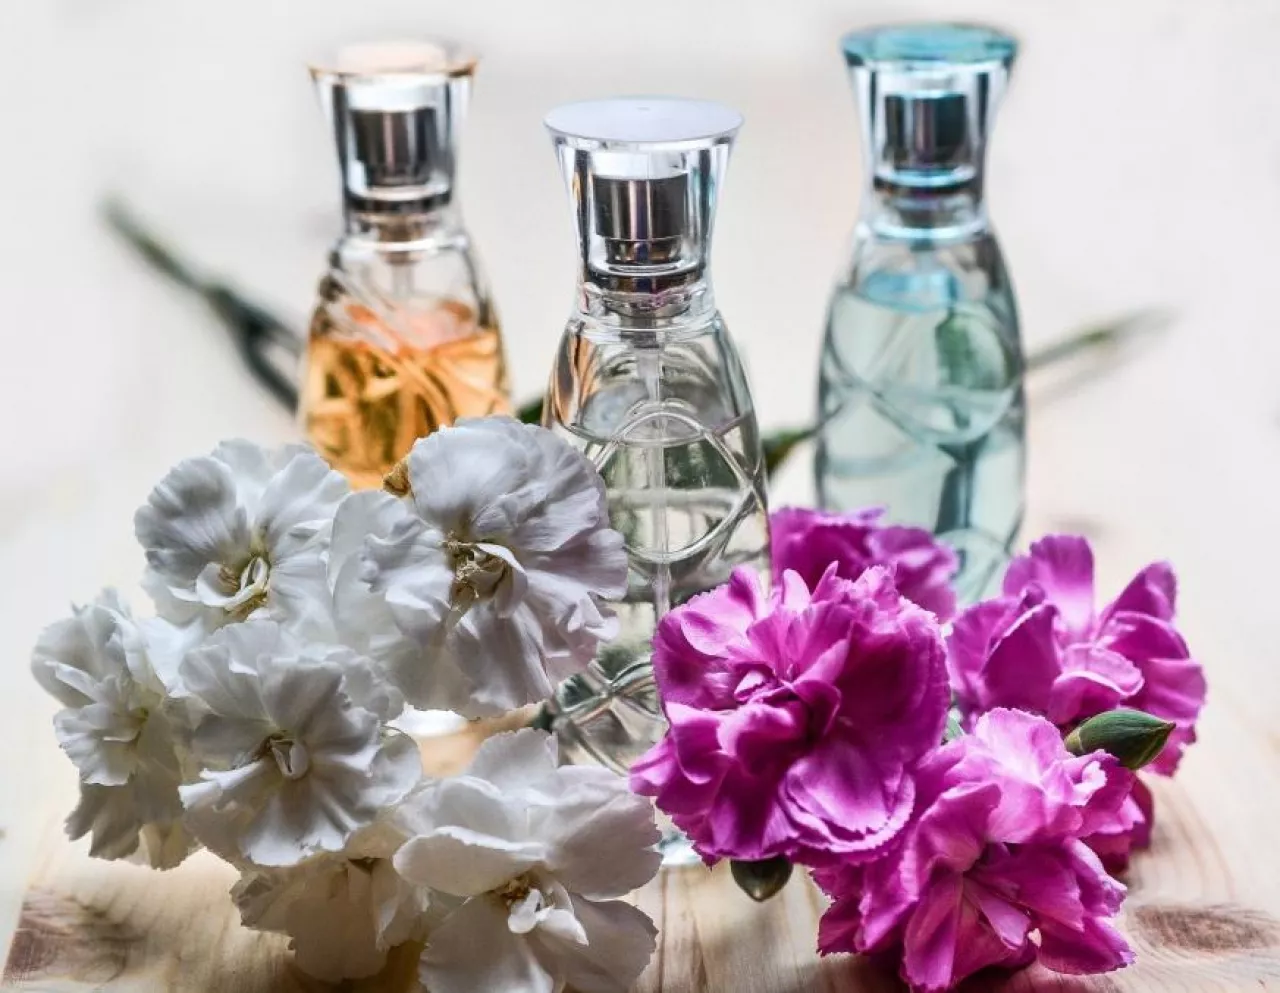 Zapach zwiększa gotowość do zakupu i może mieć większe znaczenie dla klientów niż elementy wnętrza, takie jak oświetlenie czy kolor ścian (fot. pixabay)